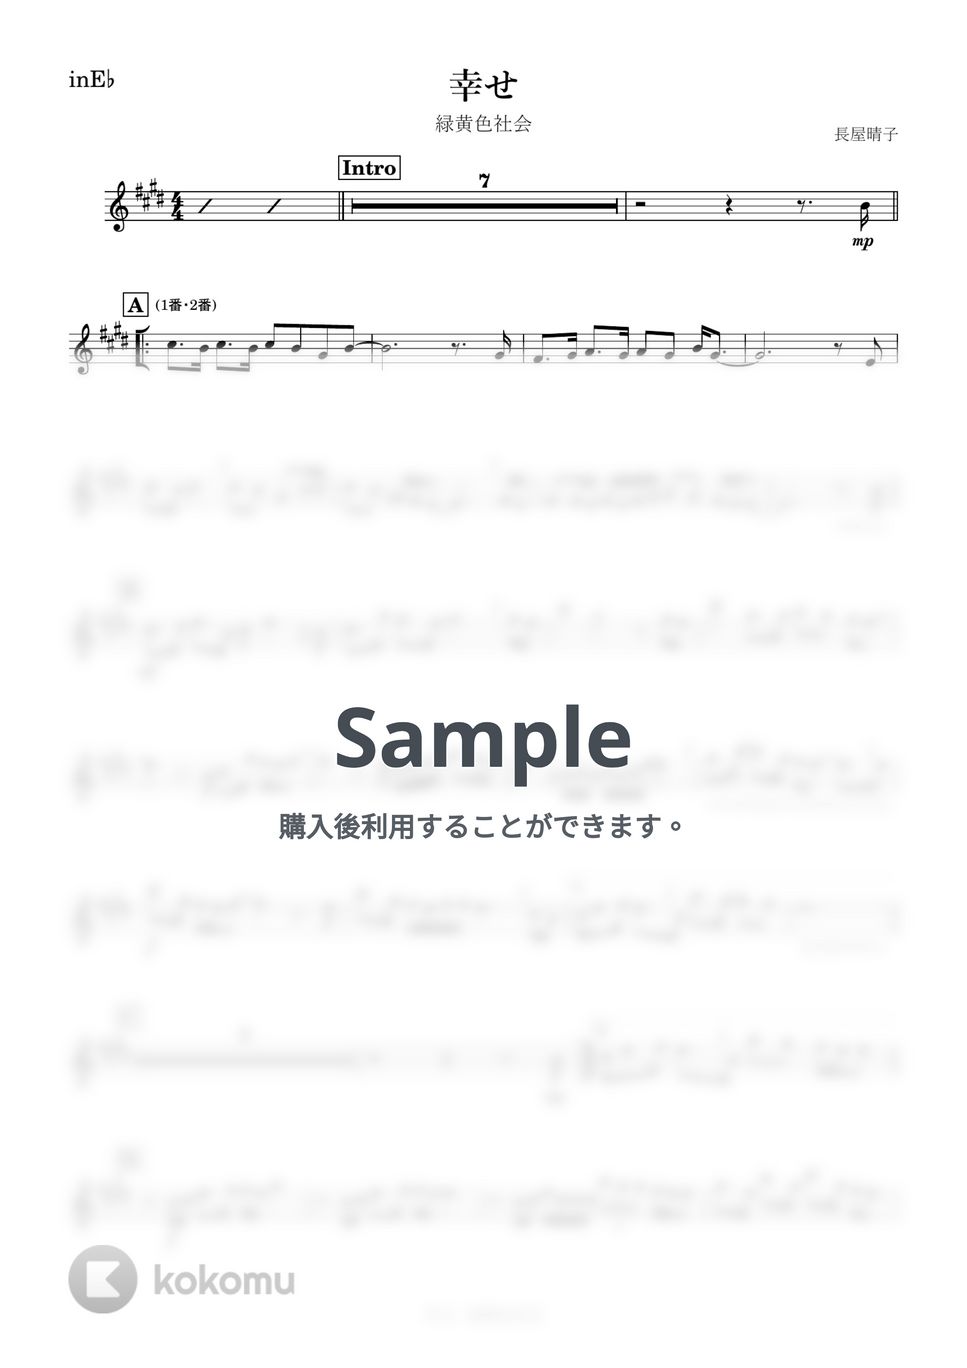 緑黄色社会 - 幸せ (E♭) by kanamusic